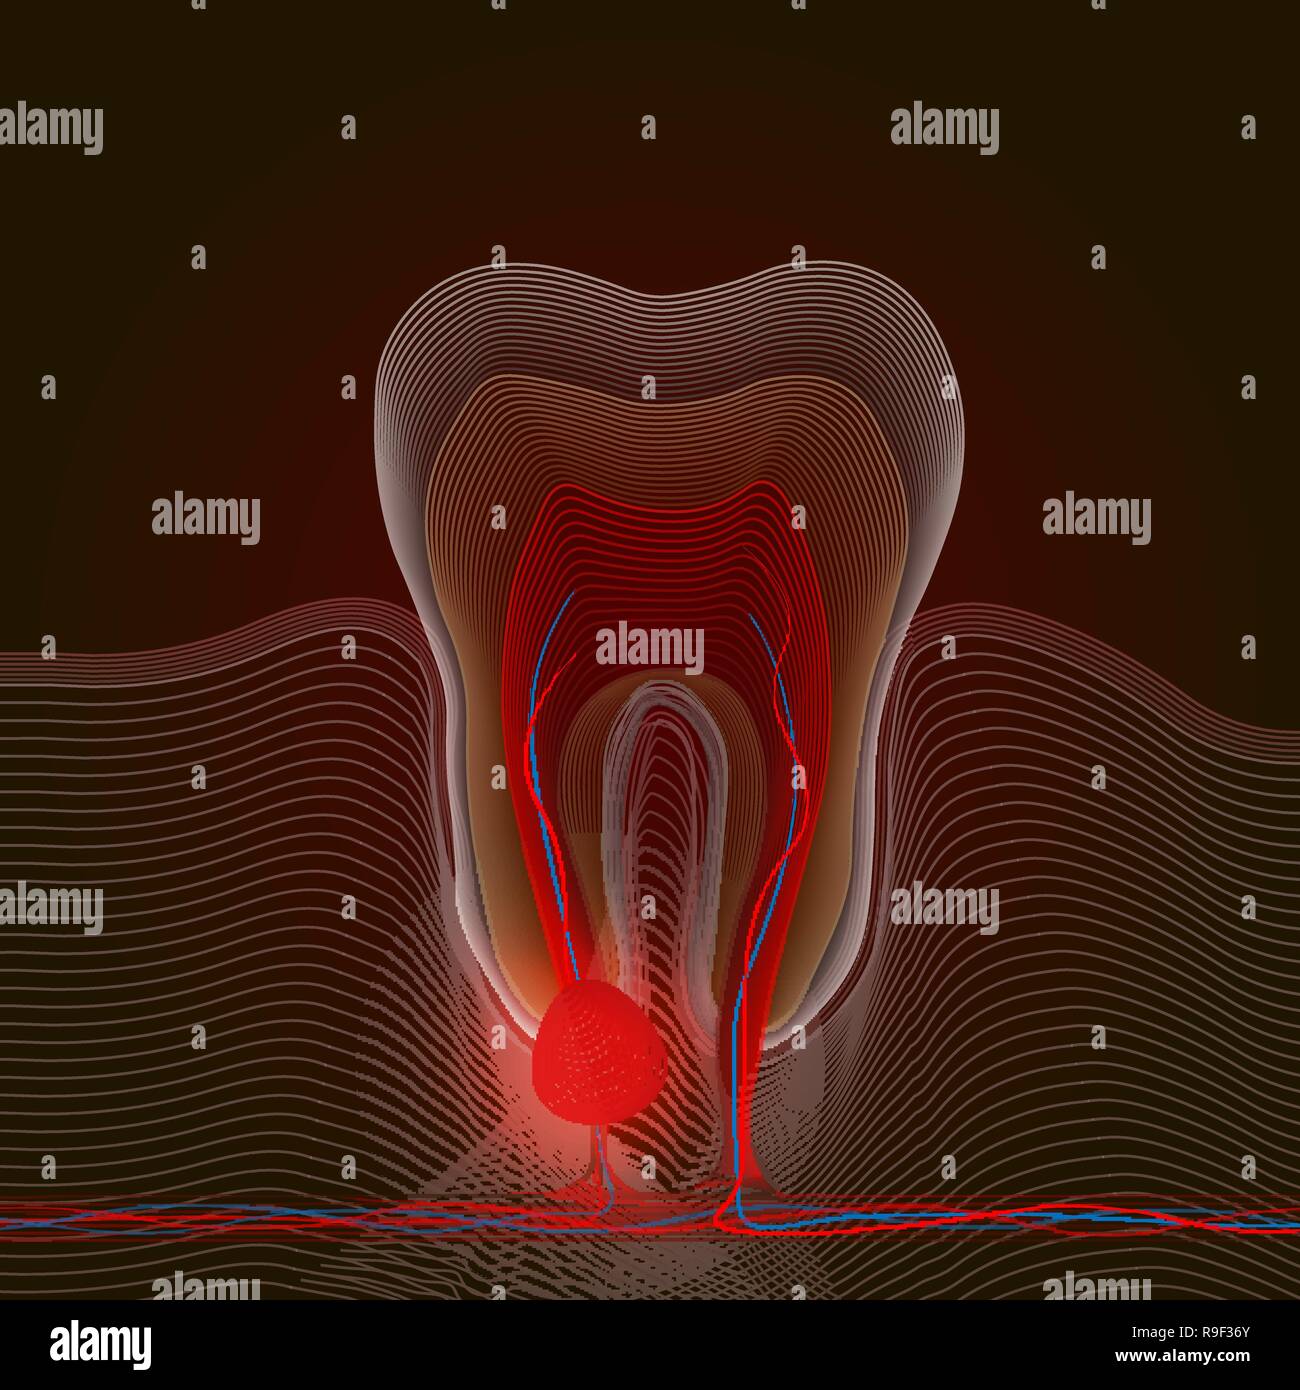 Stylisation linéaire de maladies dentaires avec un point de la douleur et l'inflammation. Illustration médicale de la racine de l'inflammation, de la racine dentaire pulpite, kyste Illustration de Vecteur